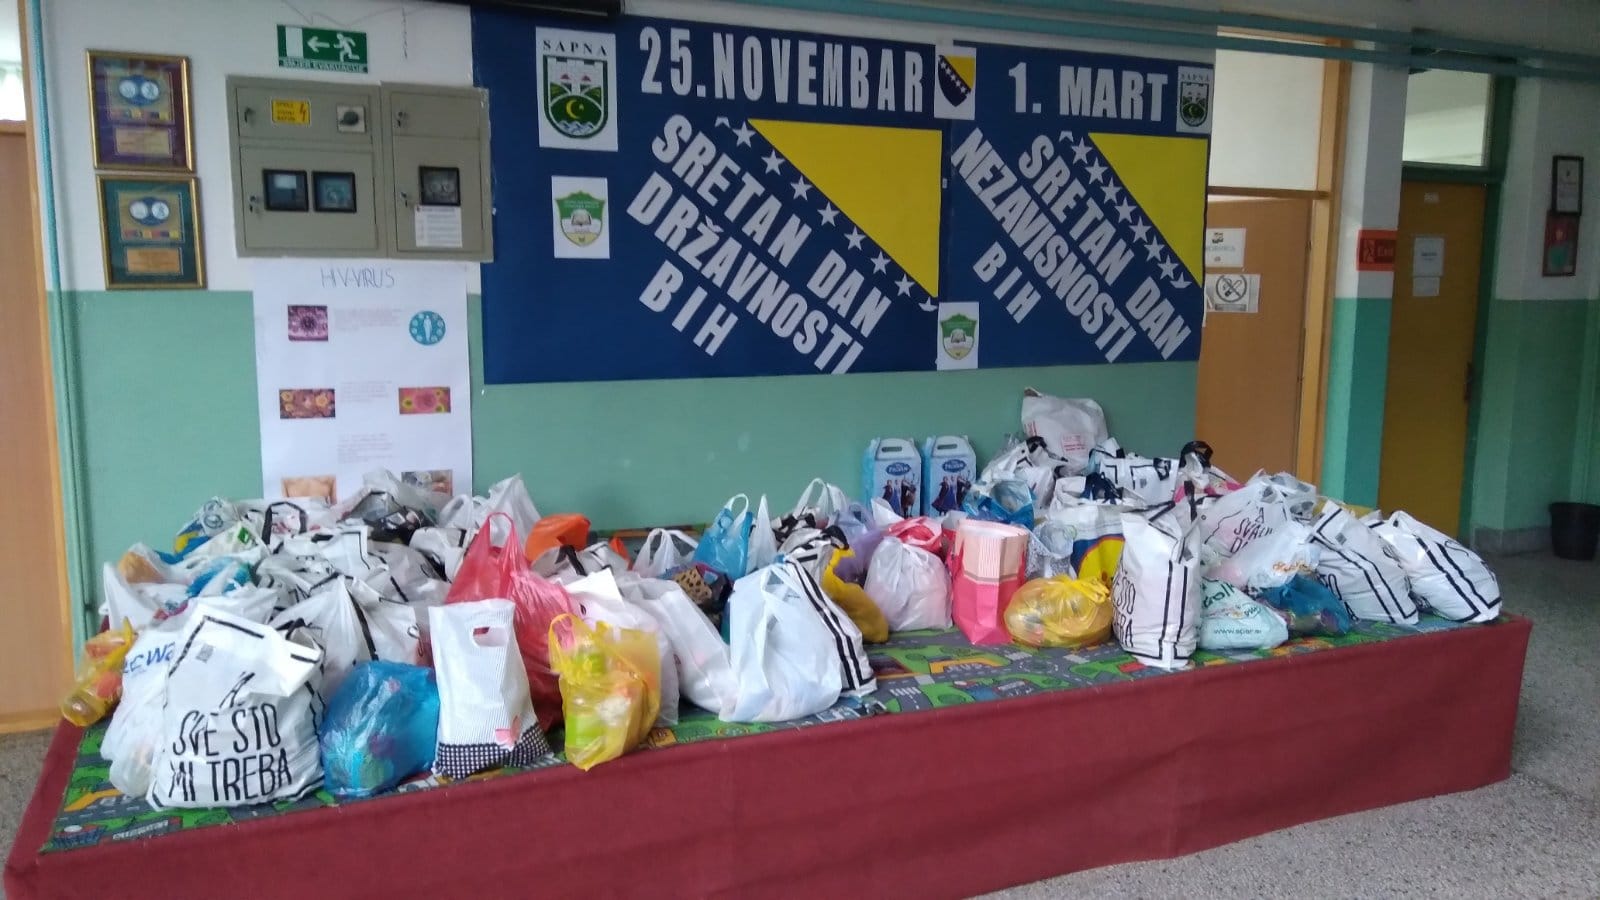 Školarci sakupili namirnice i donirali za rad narodne kuhinje u Sapni (FOTO)